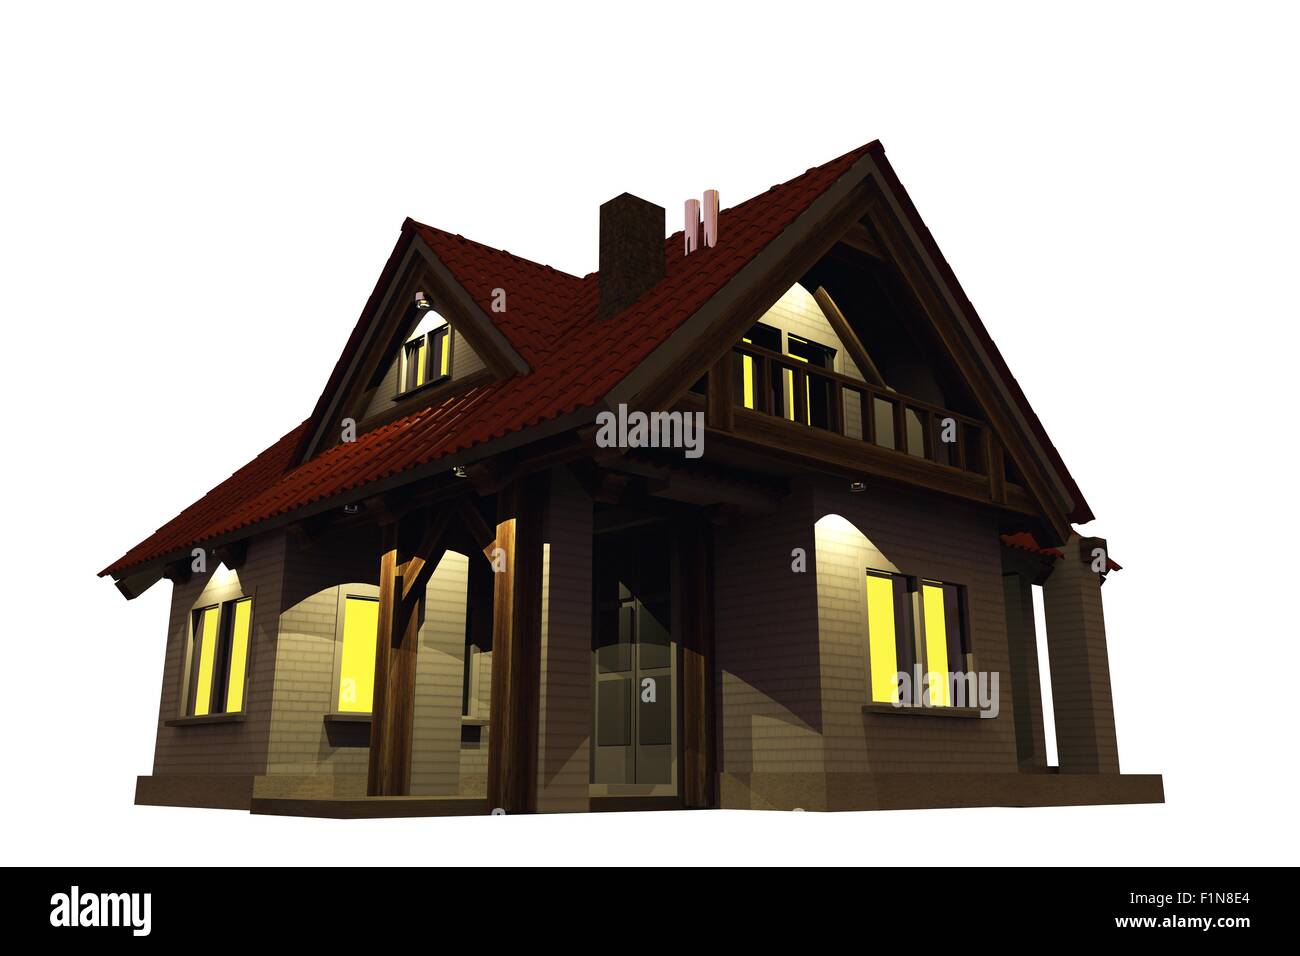 Home Evening Illumination. Single Family Home Illustration Isolated on White Background. Stock Photo